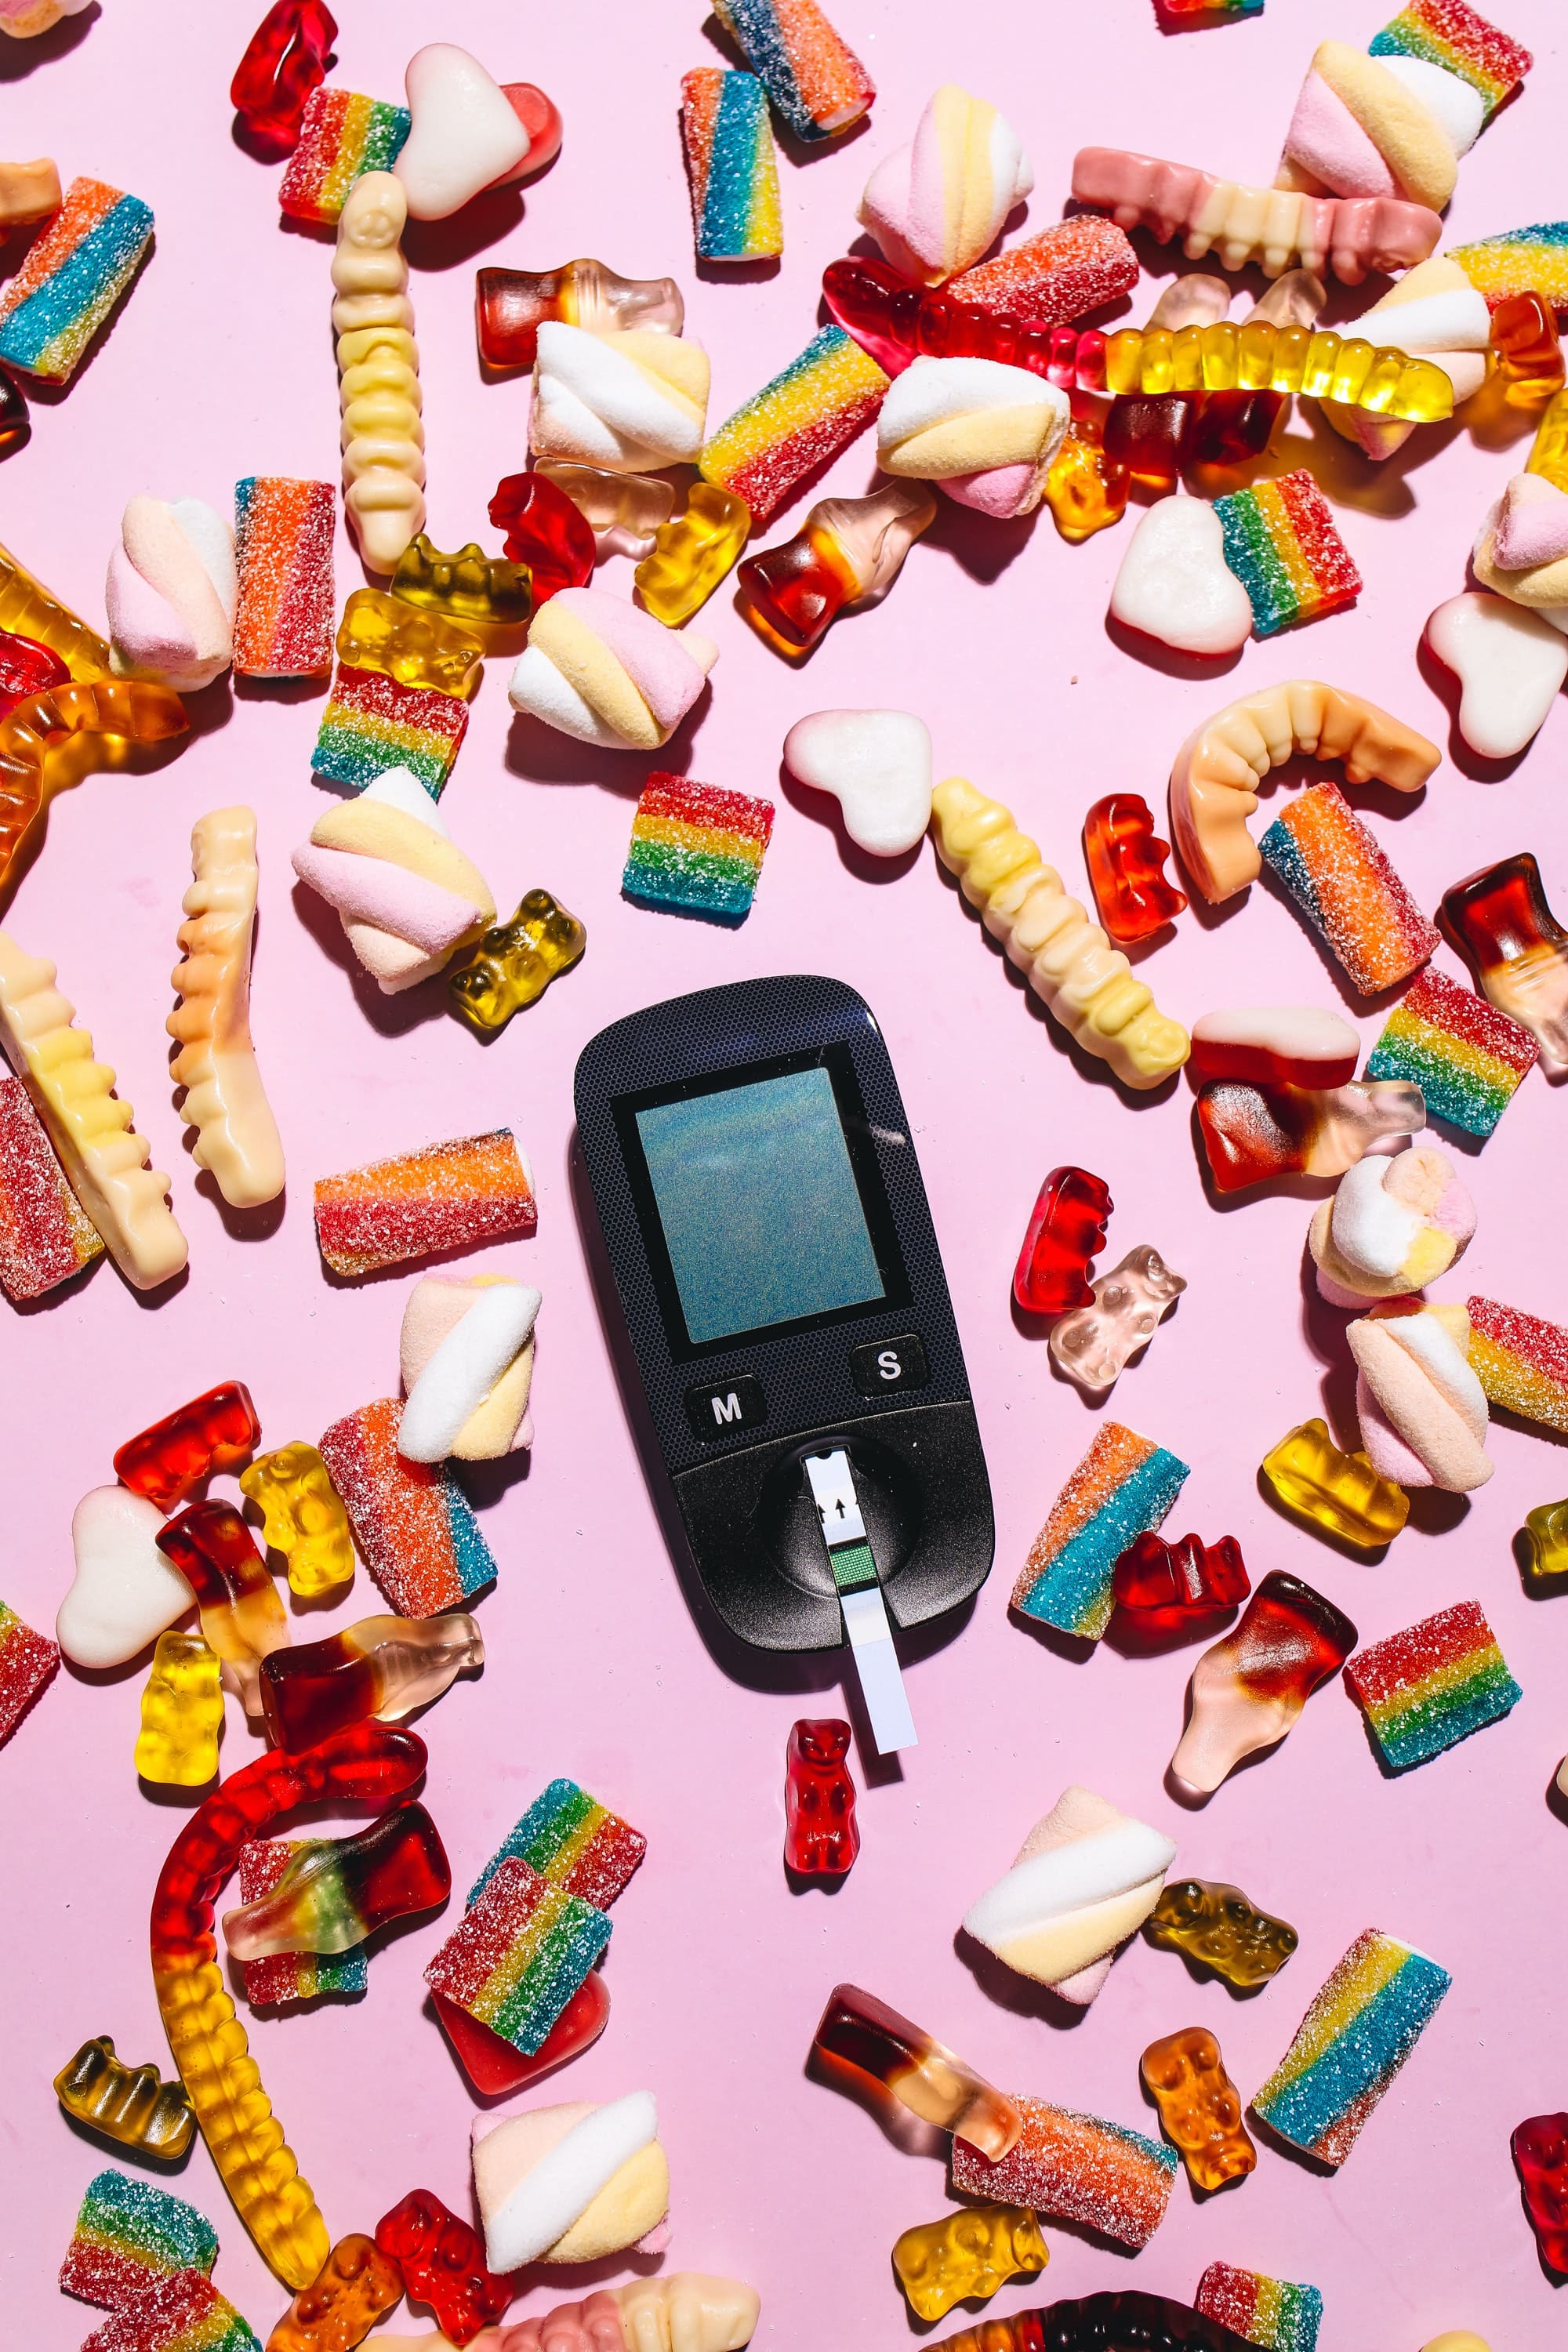 Сахарный диабет - типы и симптомы диабета, лекарства от диабета. Что можно есть при диабете?